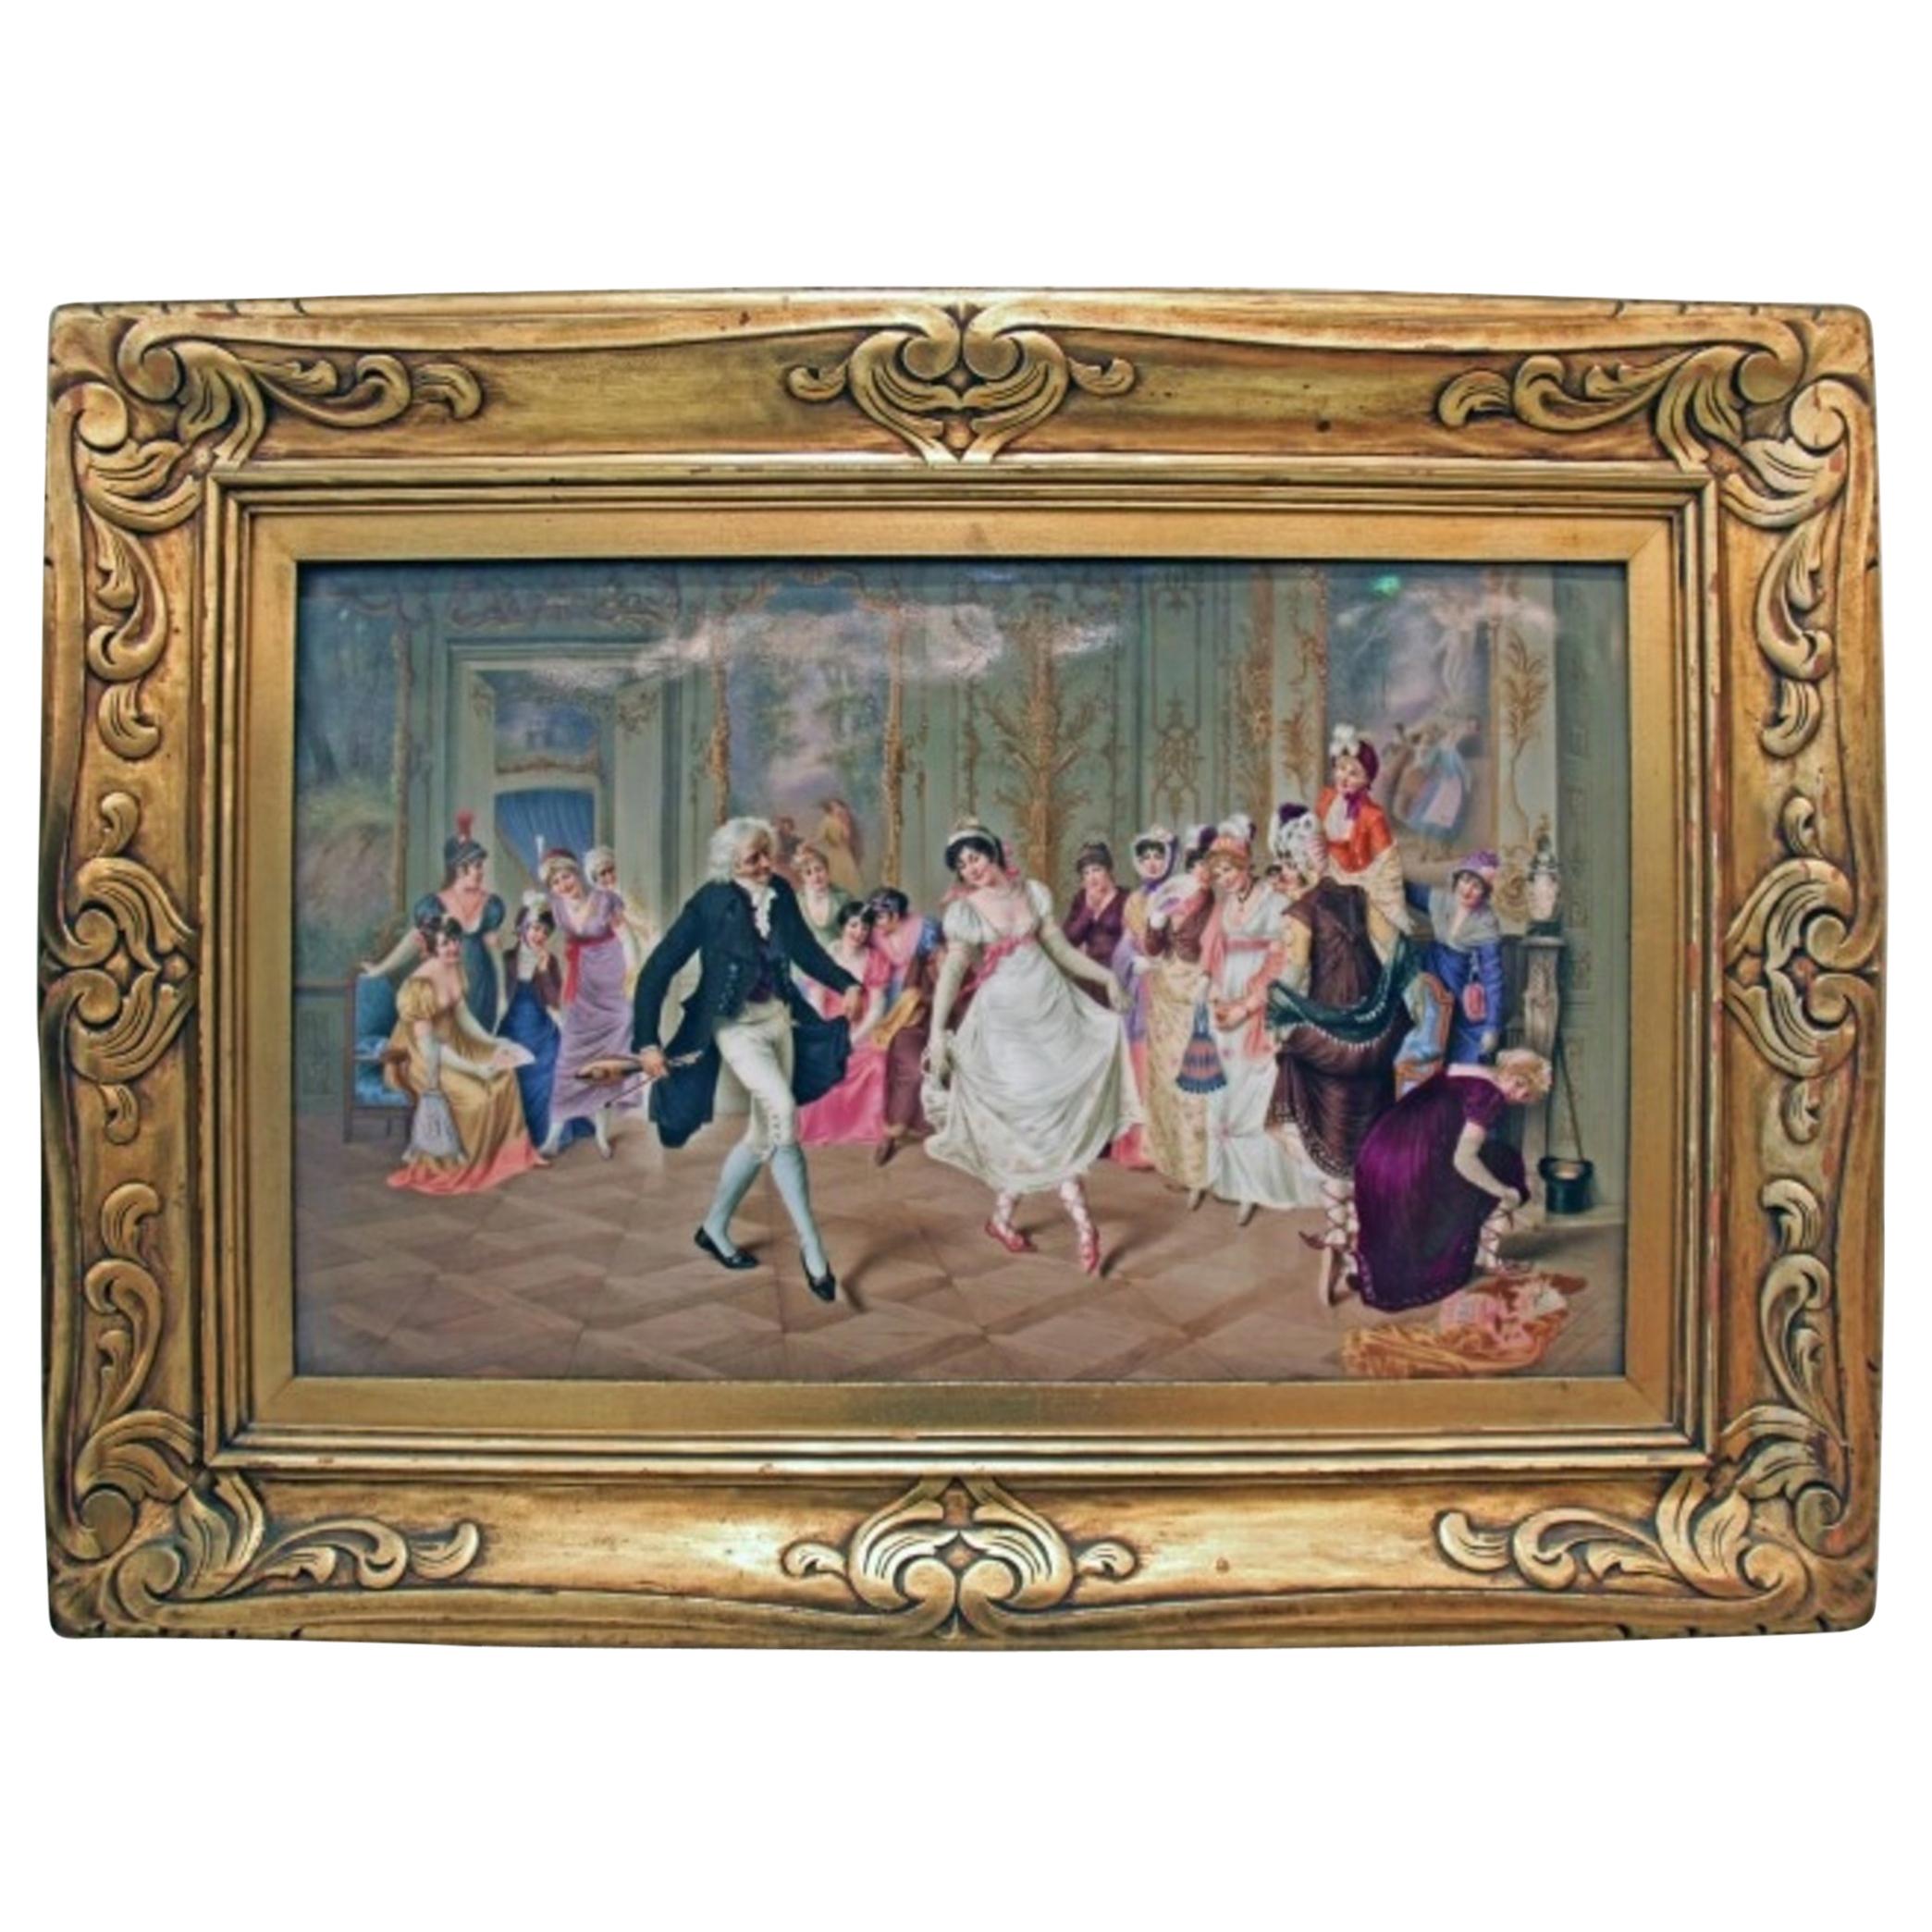 Very Important KPM Porcelain Painted Plaque, "The Dance Lesson"